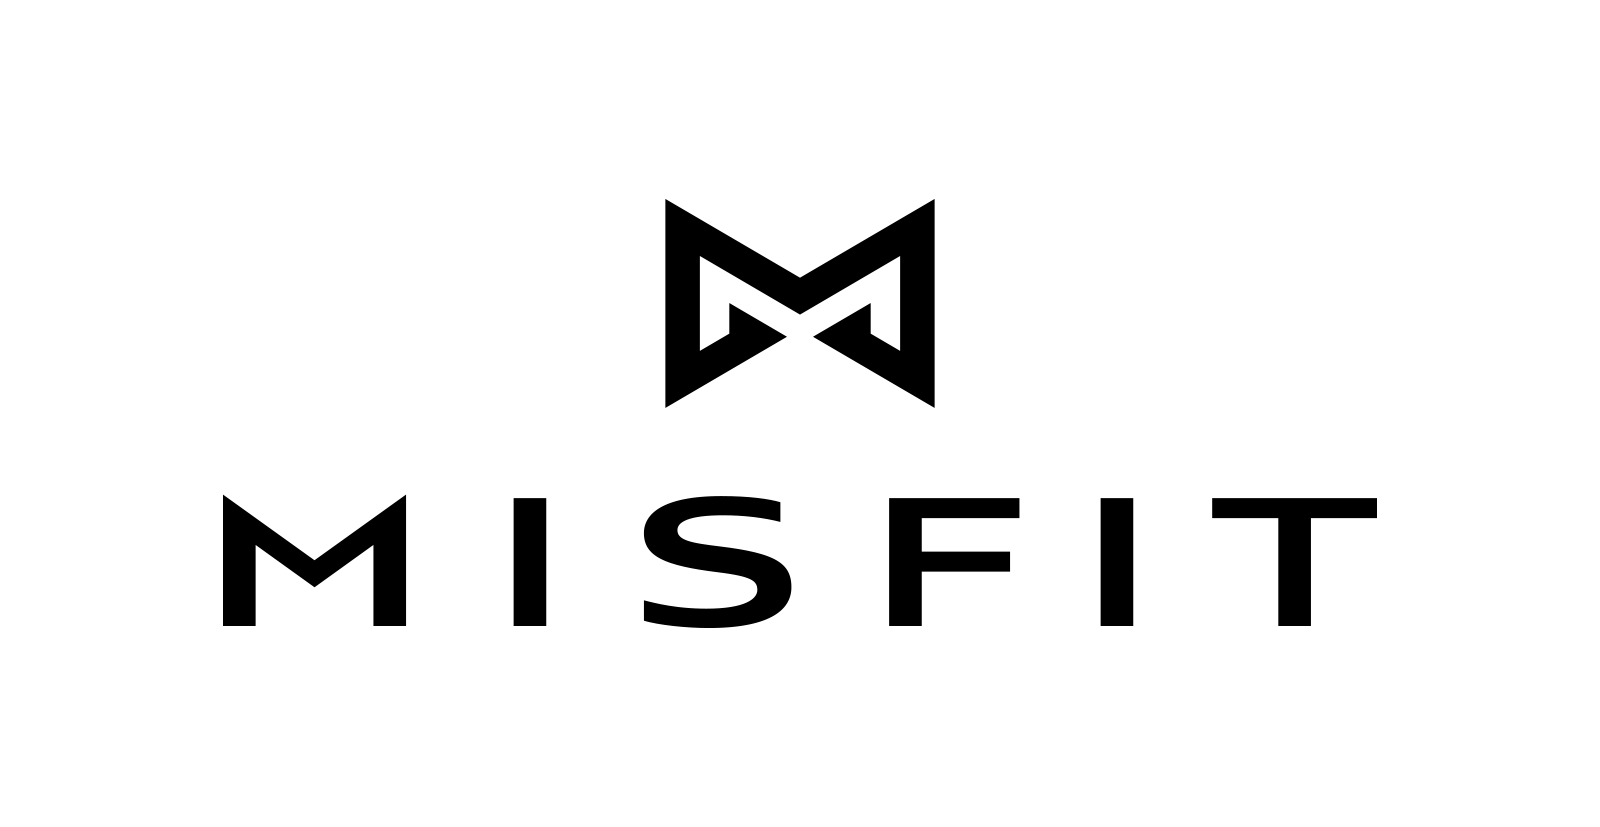 Misift logo